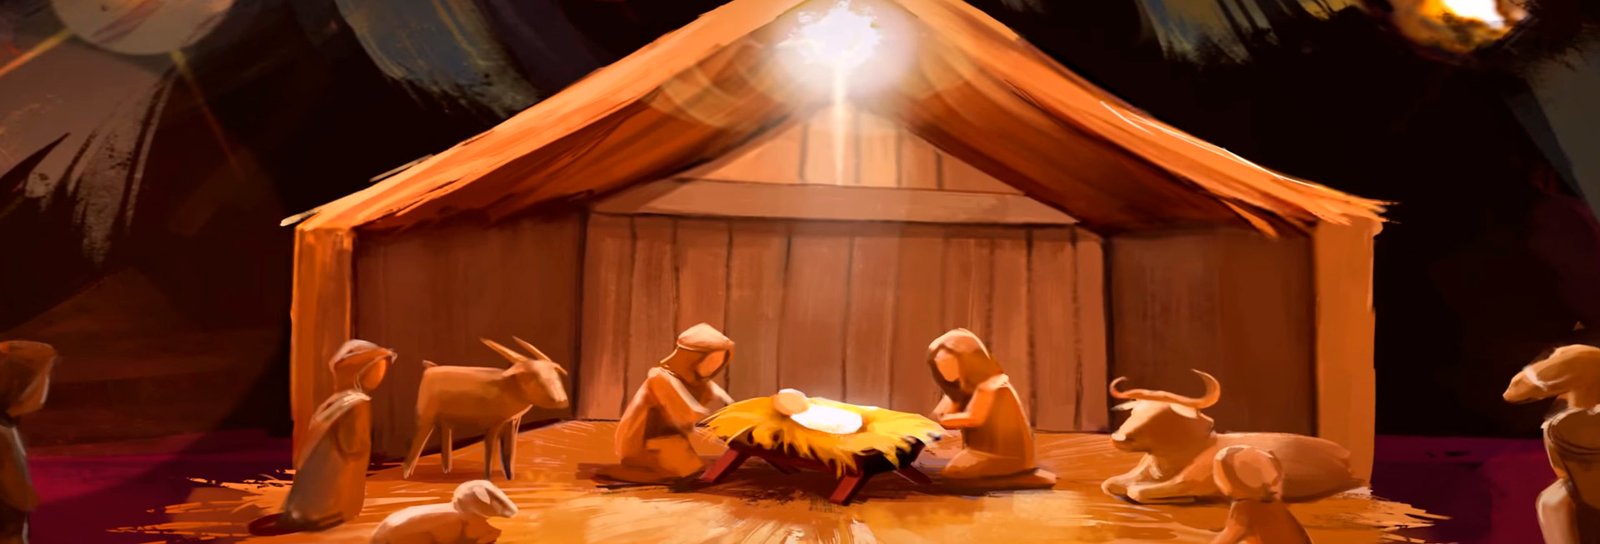 Lição 2 - O nascimento de Jesus - SLIDES E VIDEOAULAS